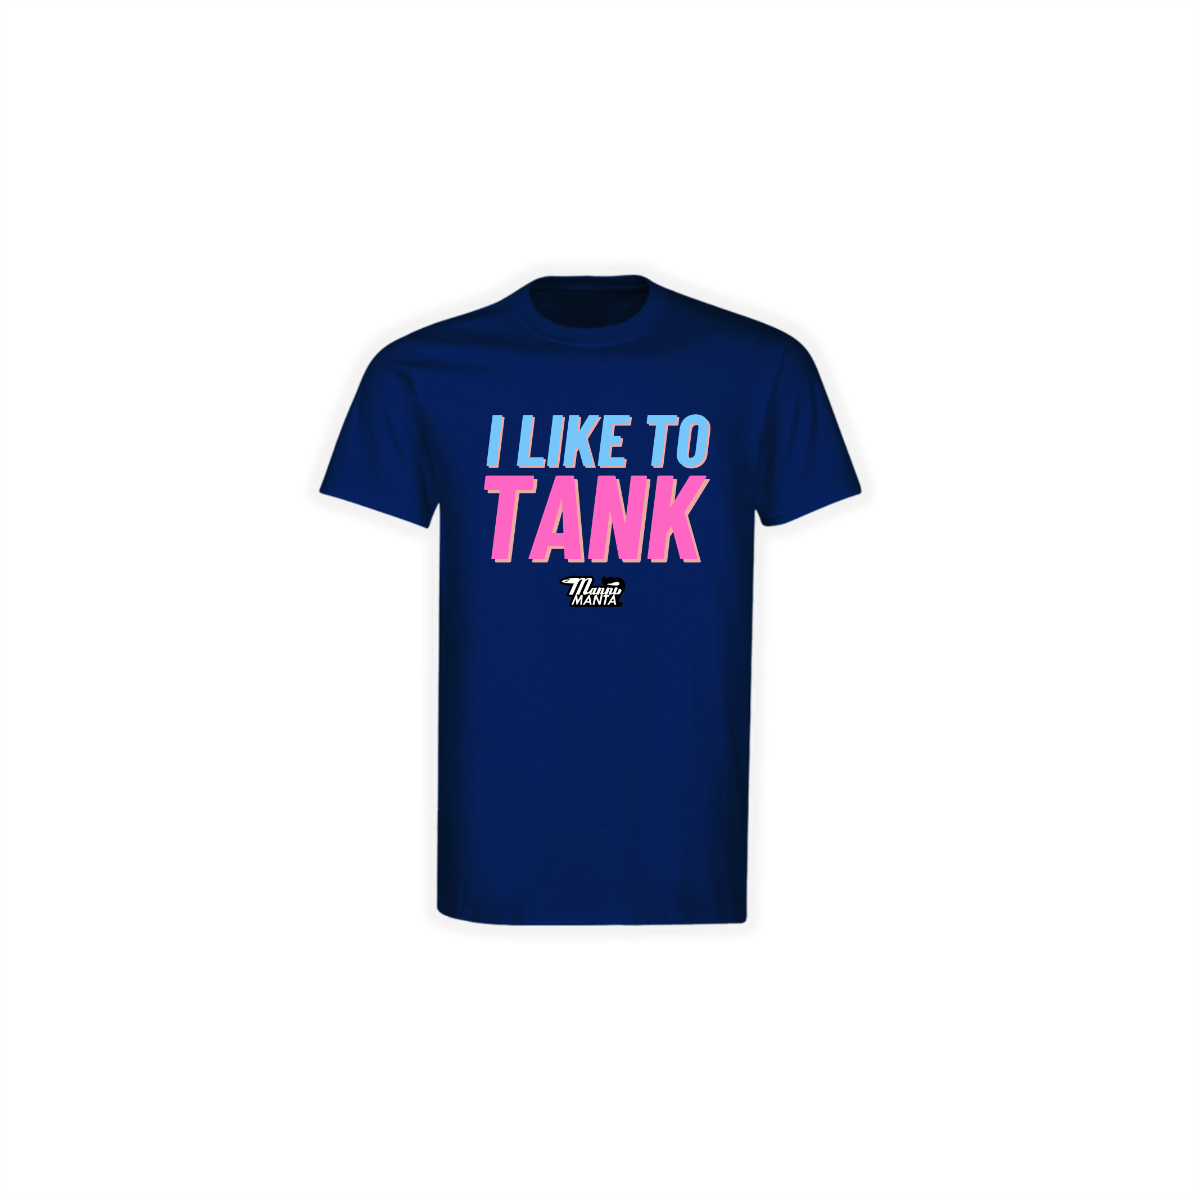 T-Shirt "I LIKE TO TANK" dunkelblau